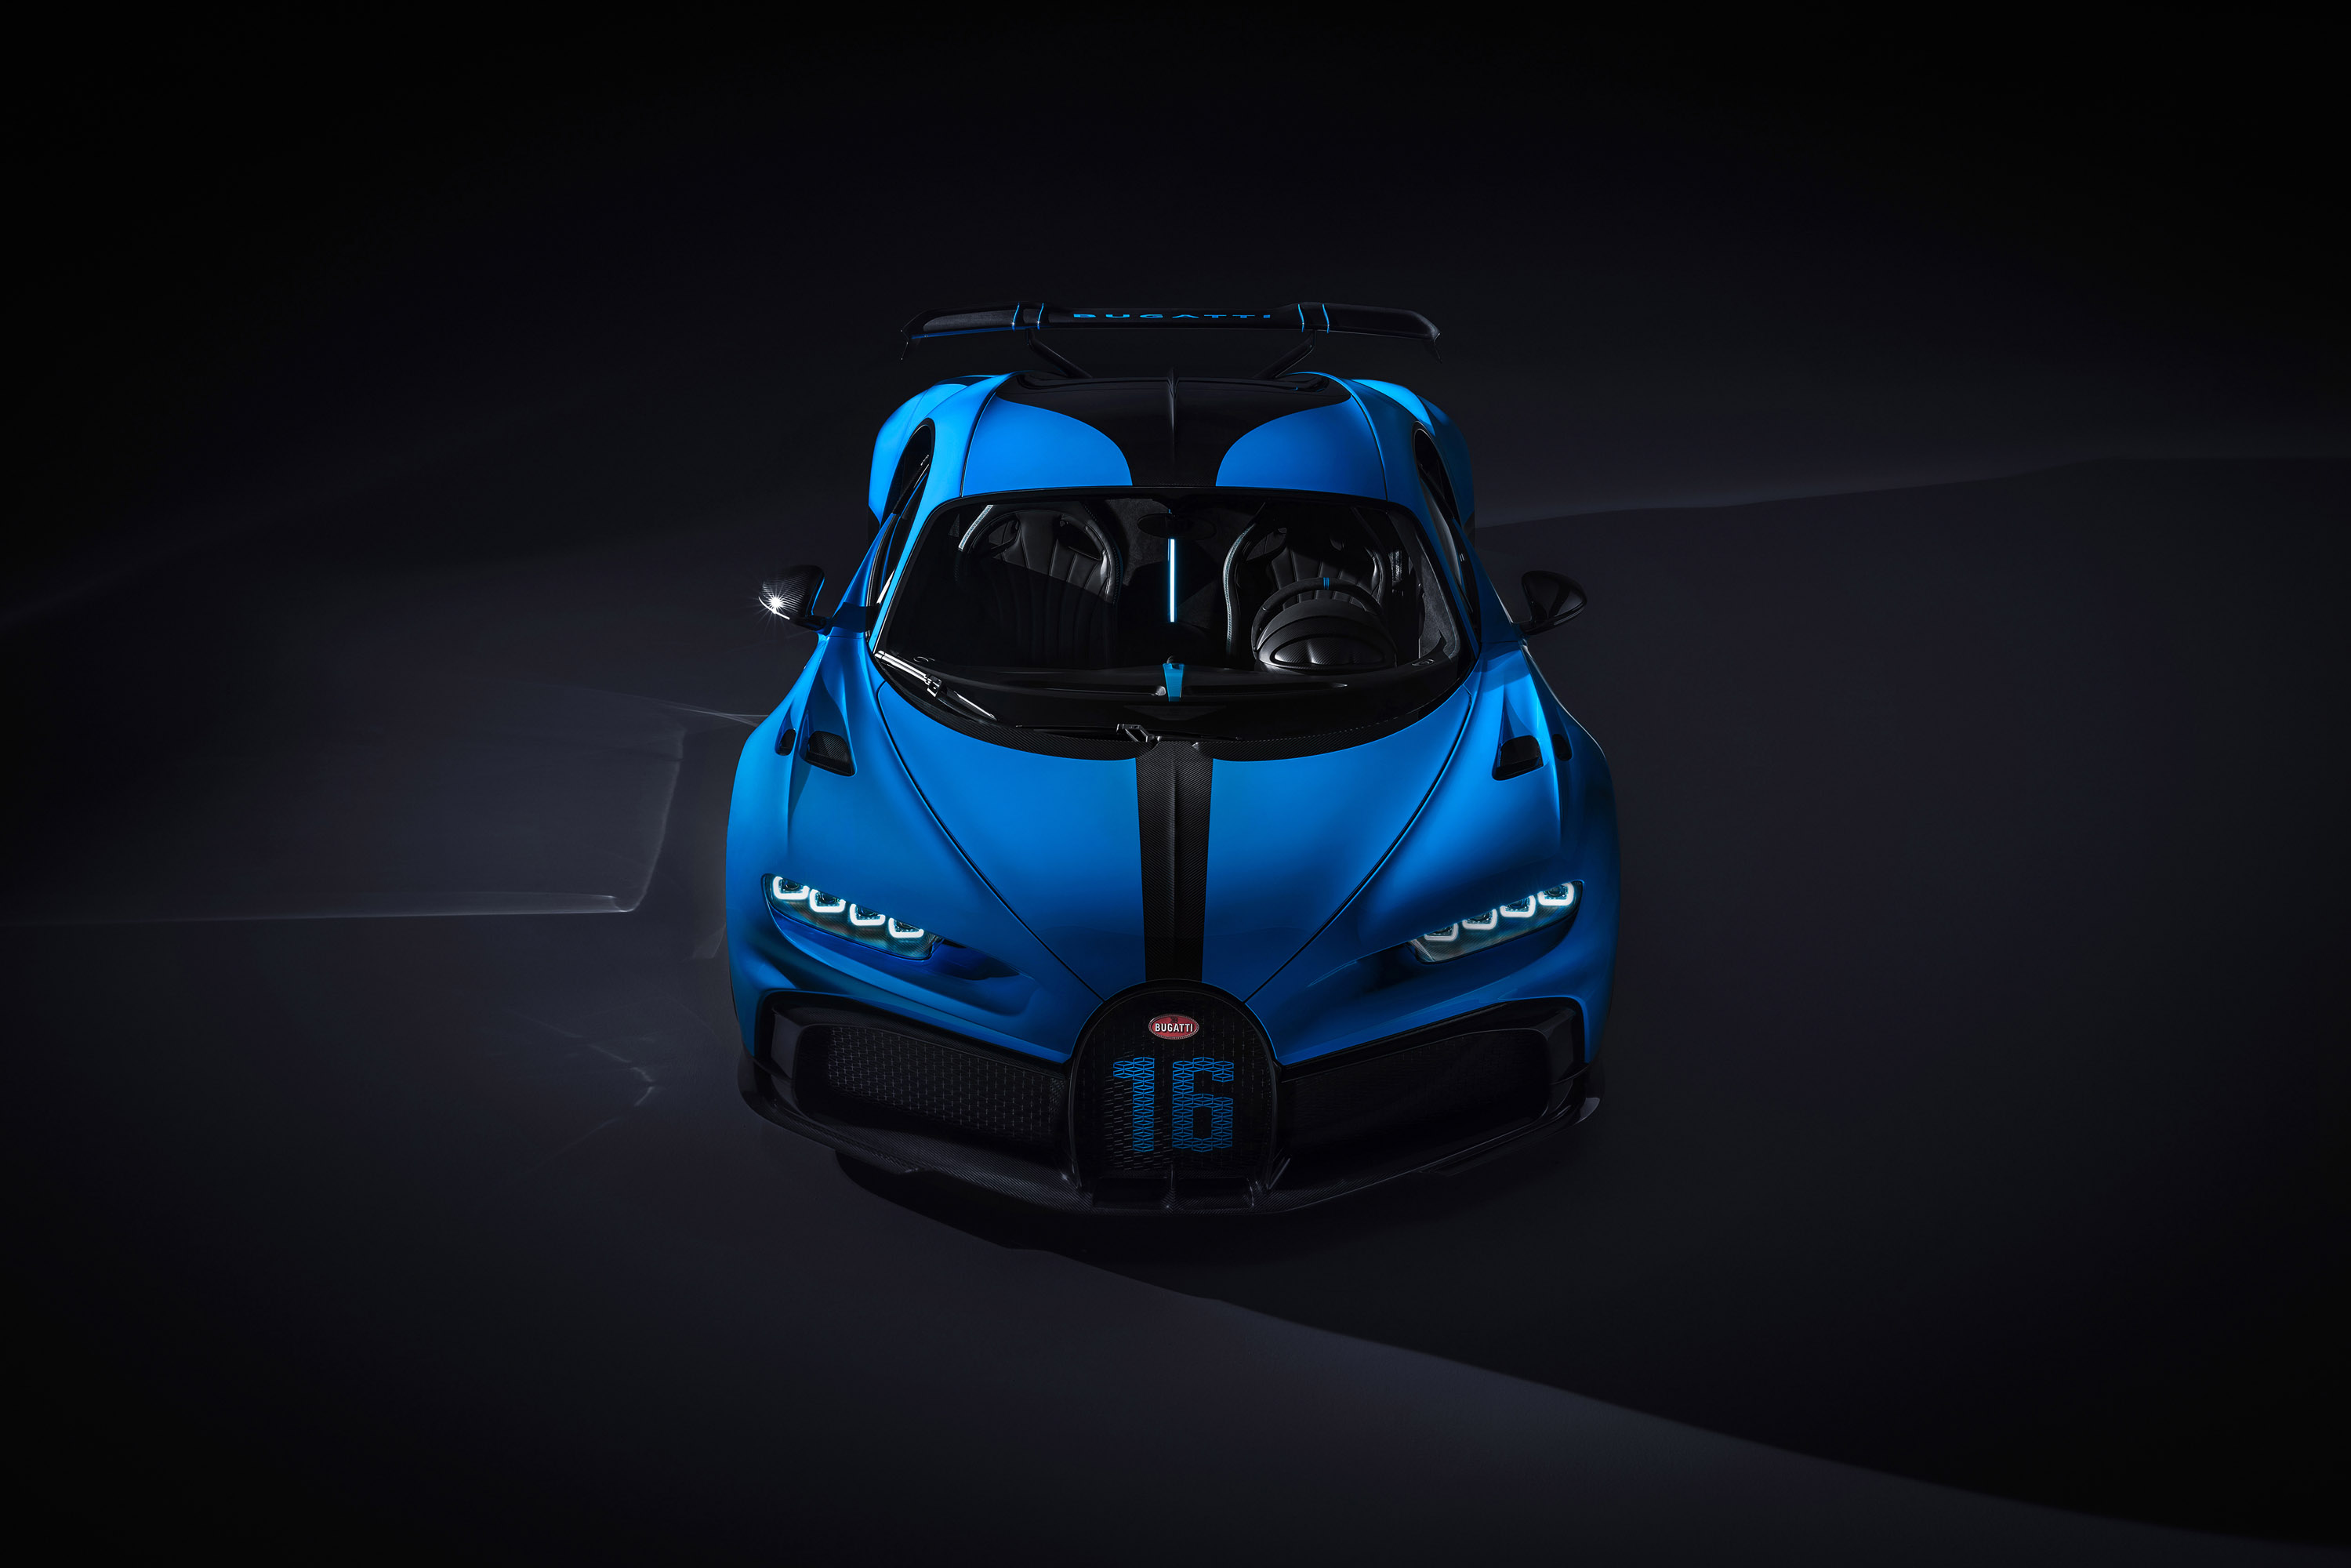 С плоской передней частью и динамичным дизайном с впечатляющим задним спойлером, новый Bugatti Chiron Pur Sport жаждет поворотов и сложных дорог.